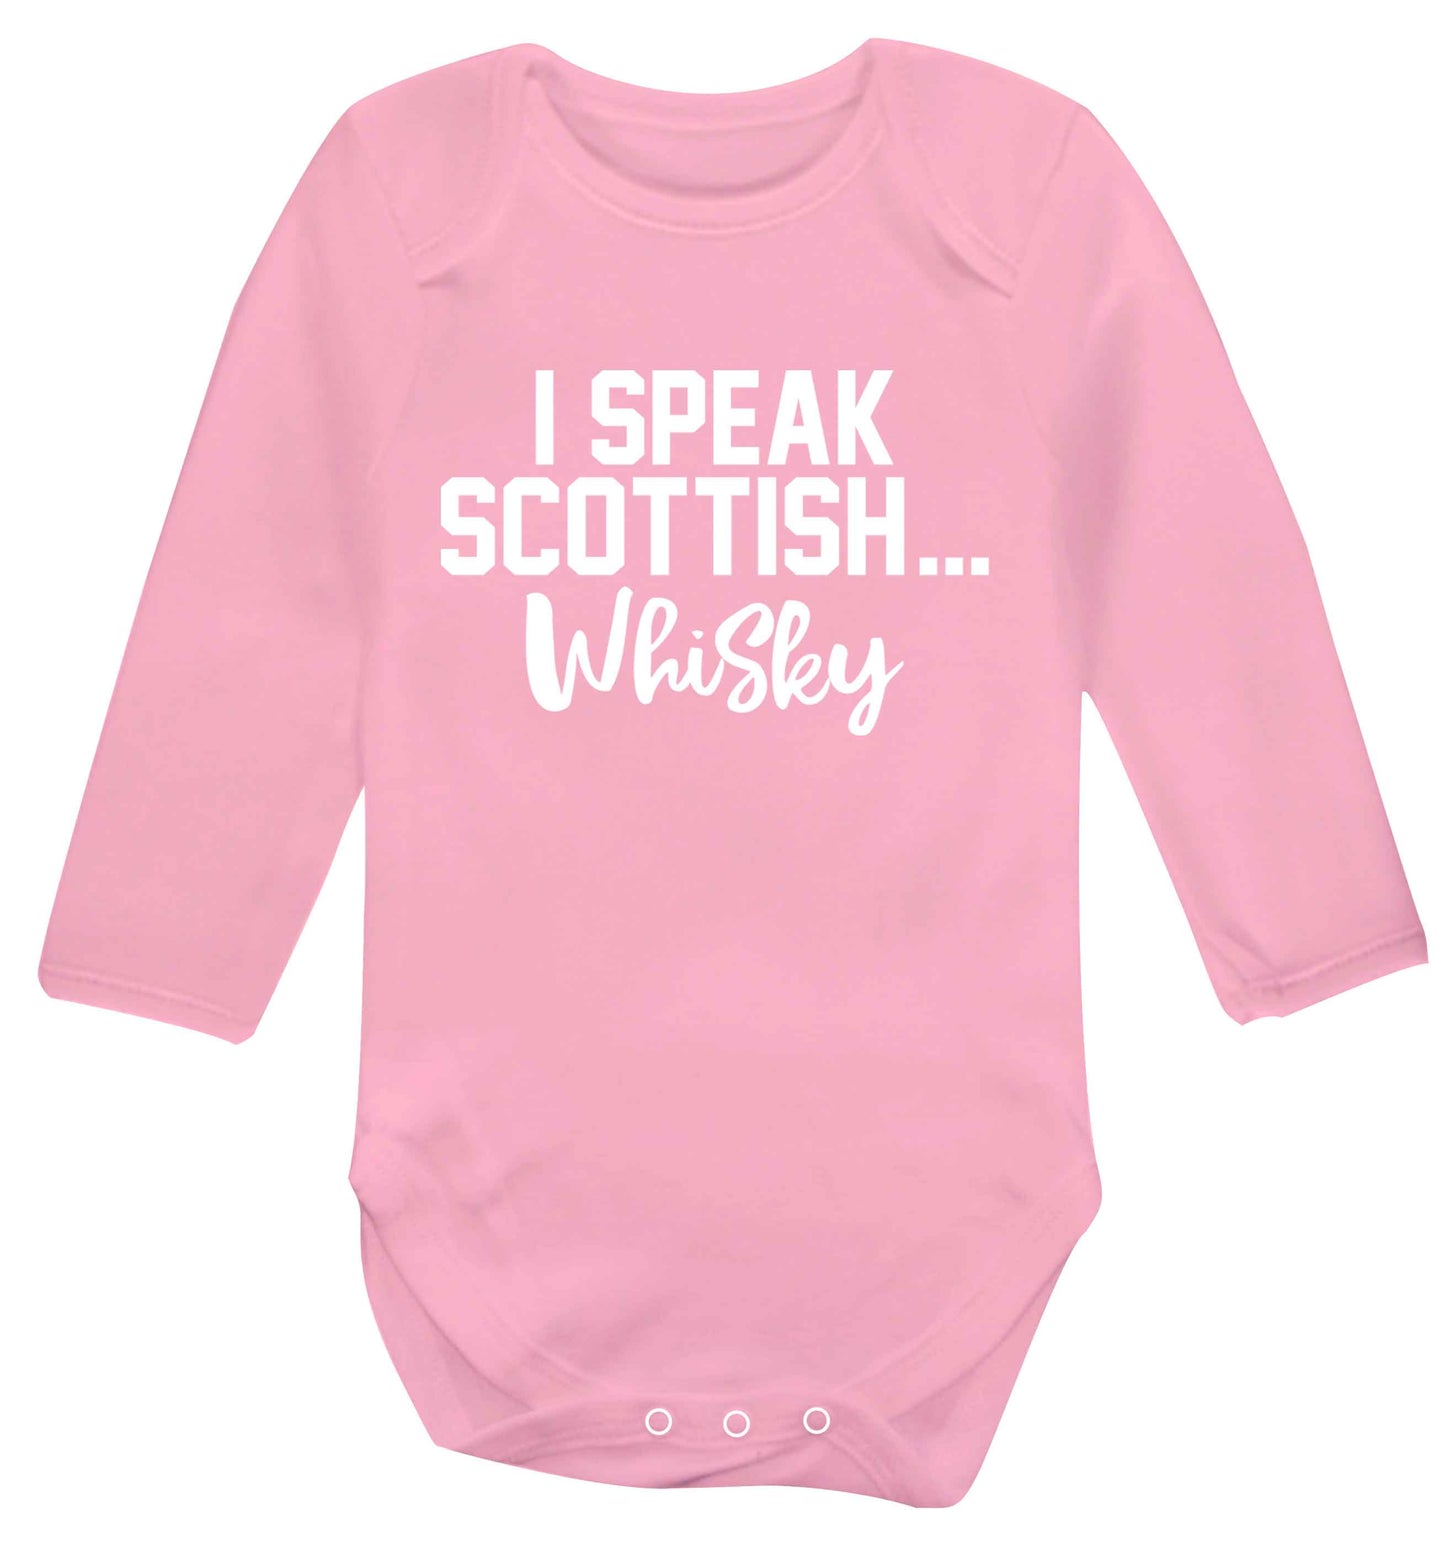 I speak scottish...whisky Baby Vest long sleeved pale pink 6-12 months